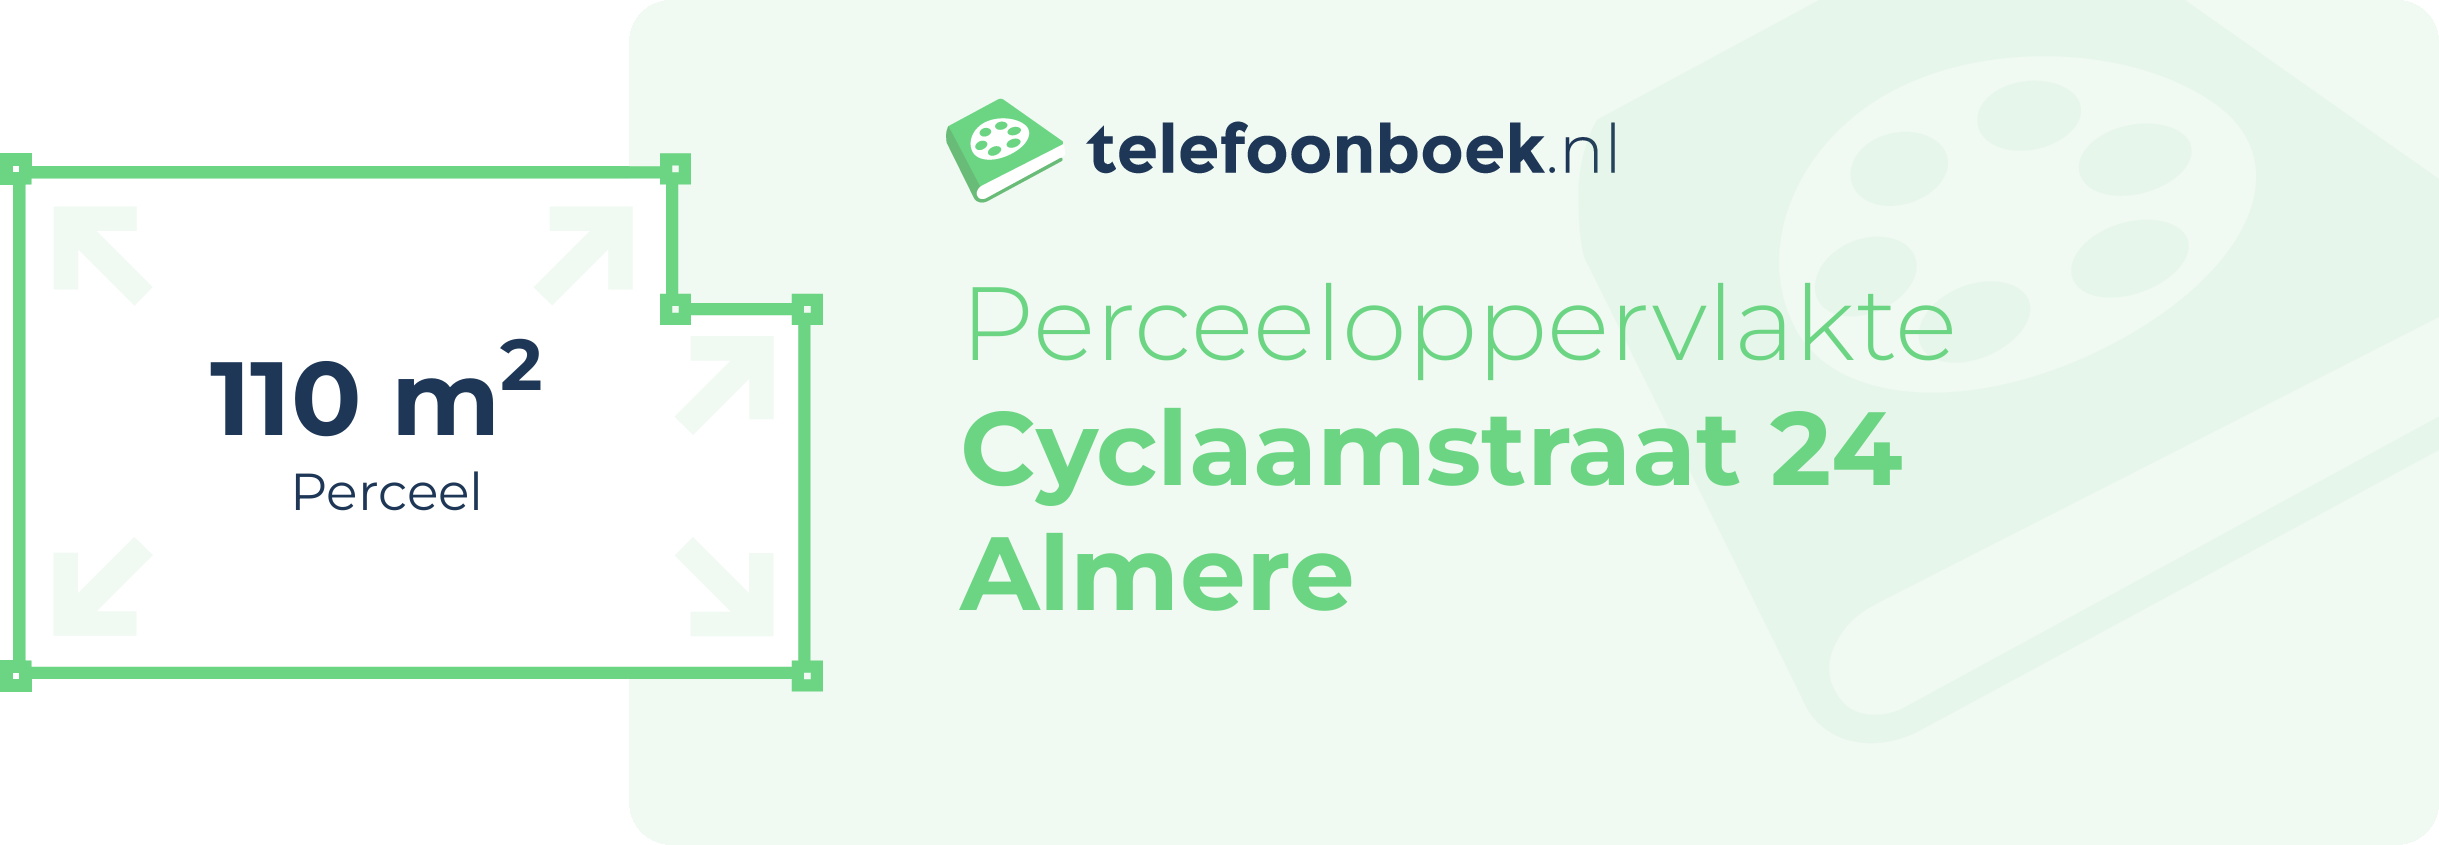 Perceeloppervlakte Cyclaamstraat 24 Almere